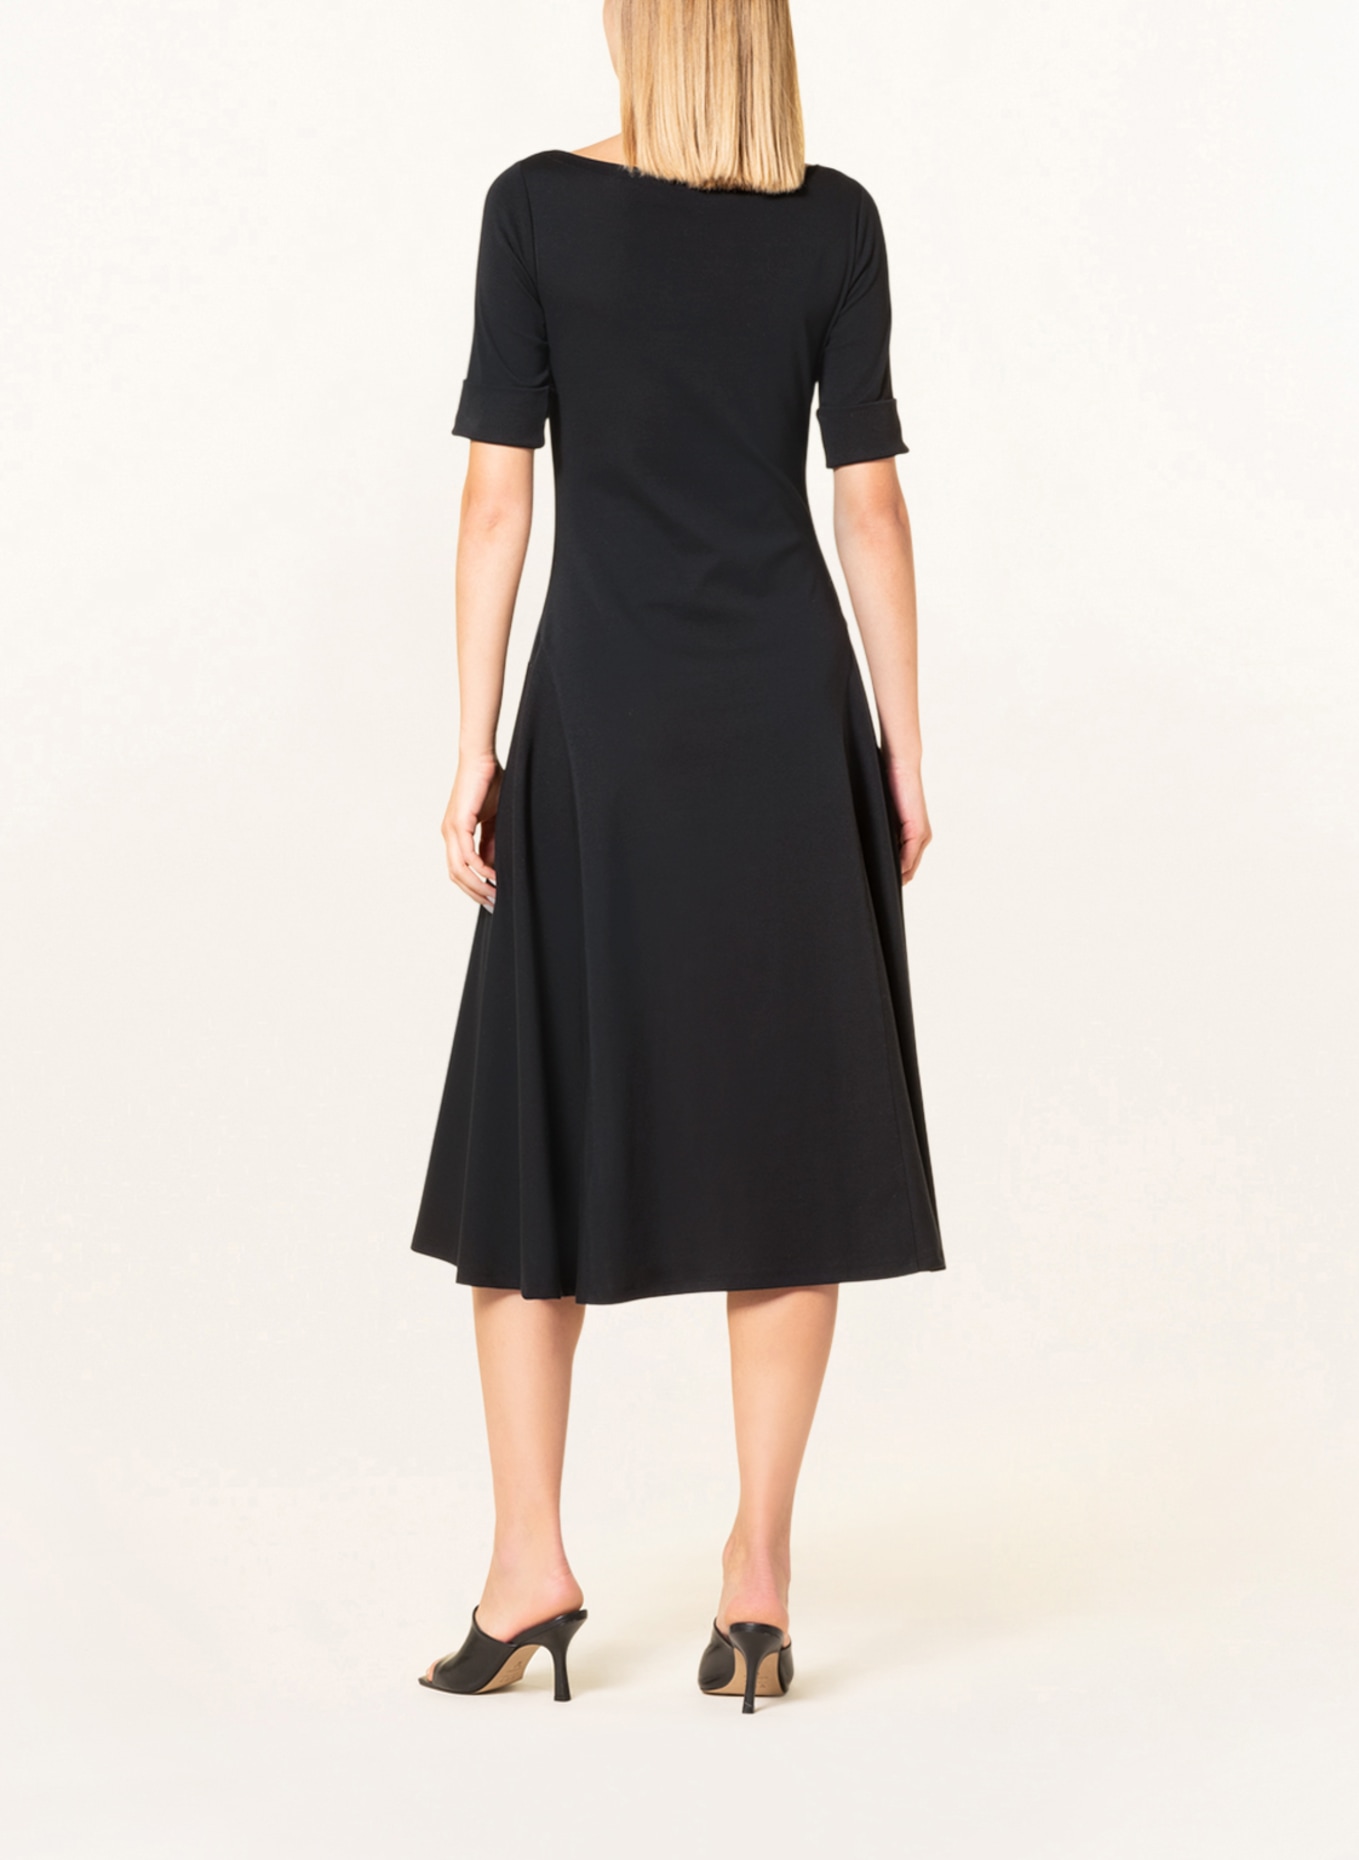 LAUREN RALPH LAUREN Jersey dress, Color: BLACK (Image 3)